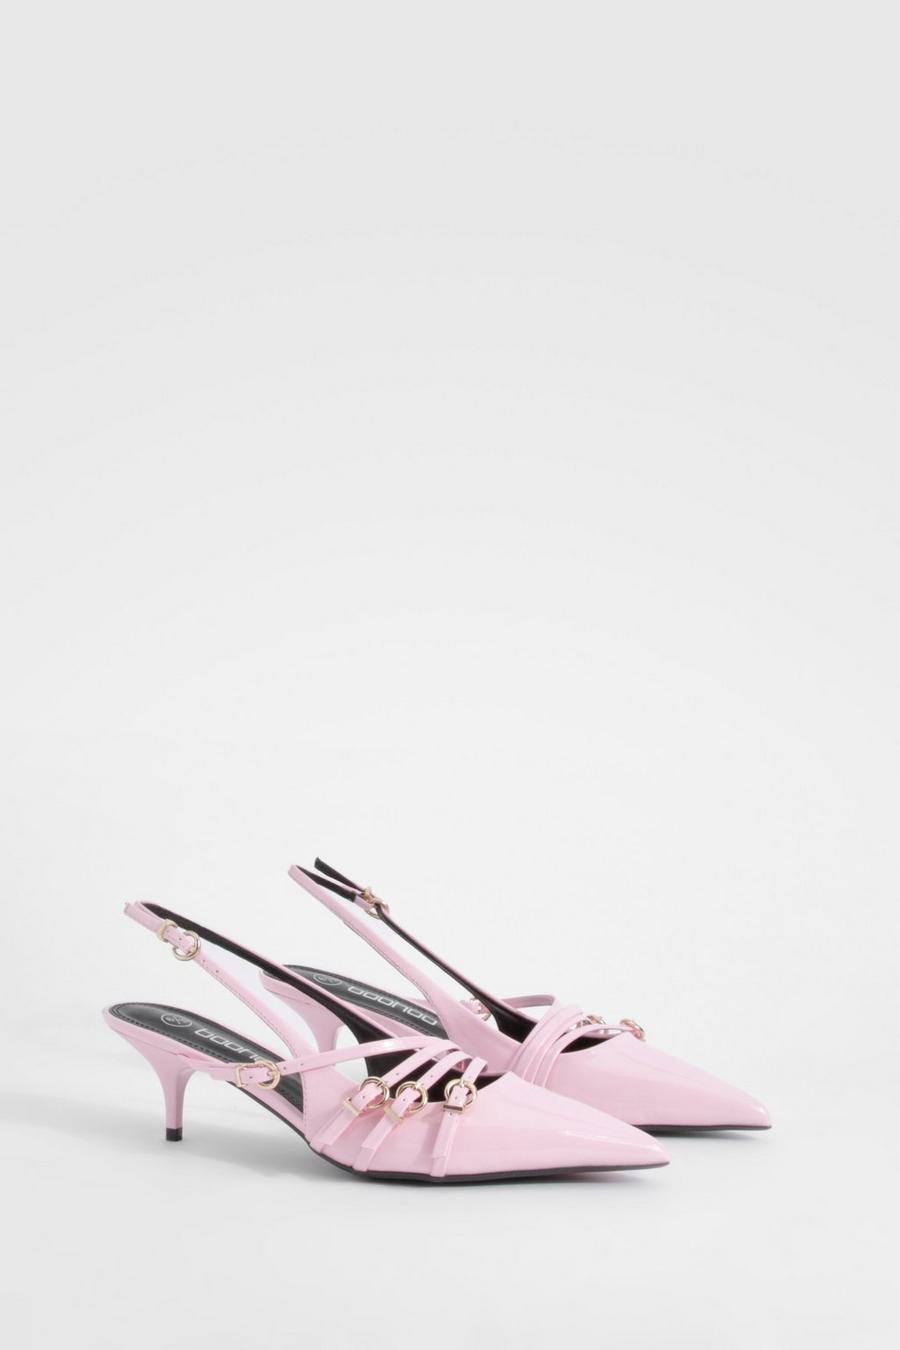 Zapatos de salón bajos con tacón de aguja y hebilla, Pink